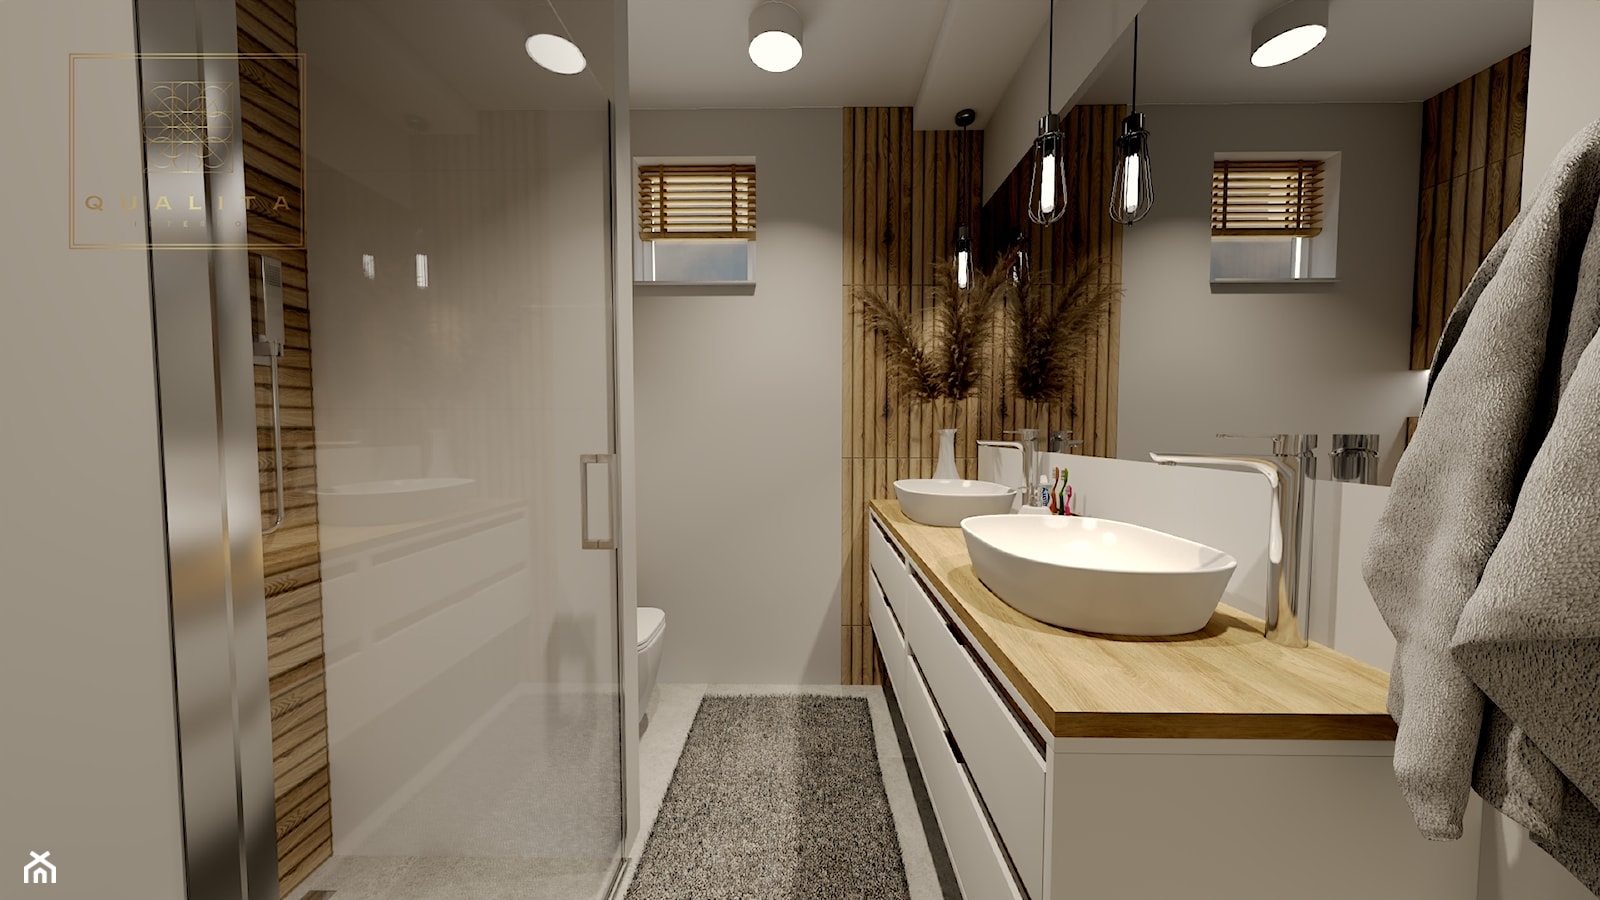 Mała łazienka z umywalkami dla dwóch osób - zdjęcie od Qualita Interno - Homebook